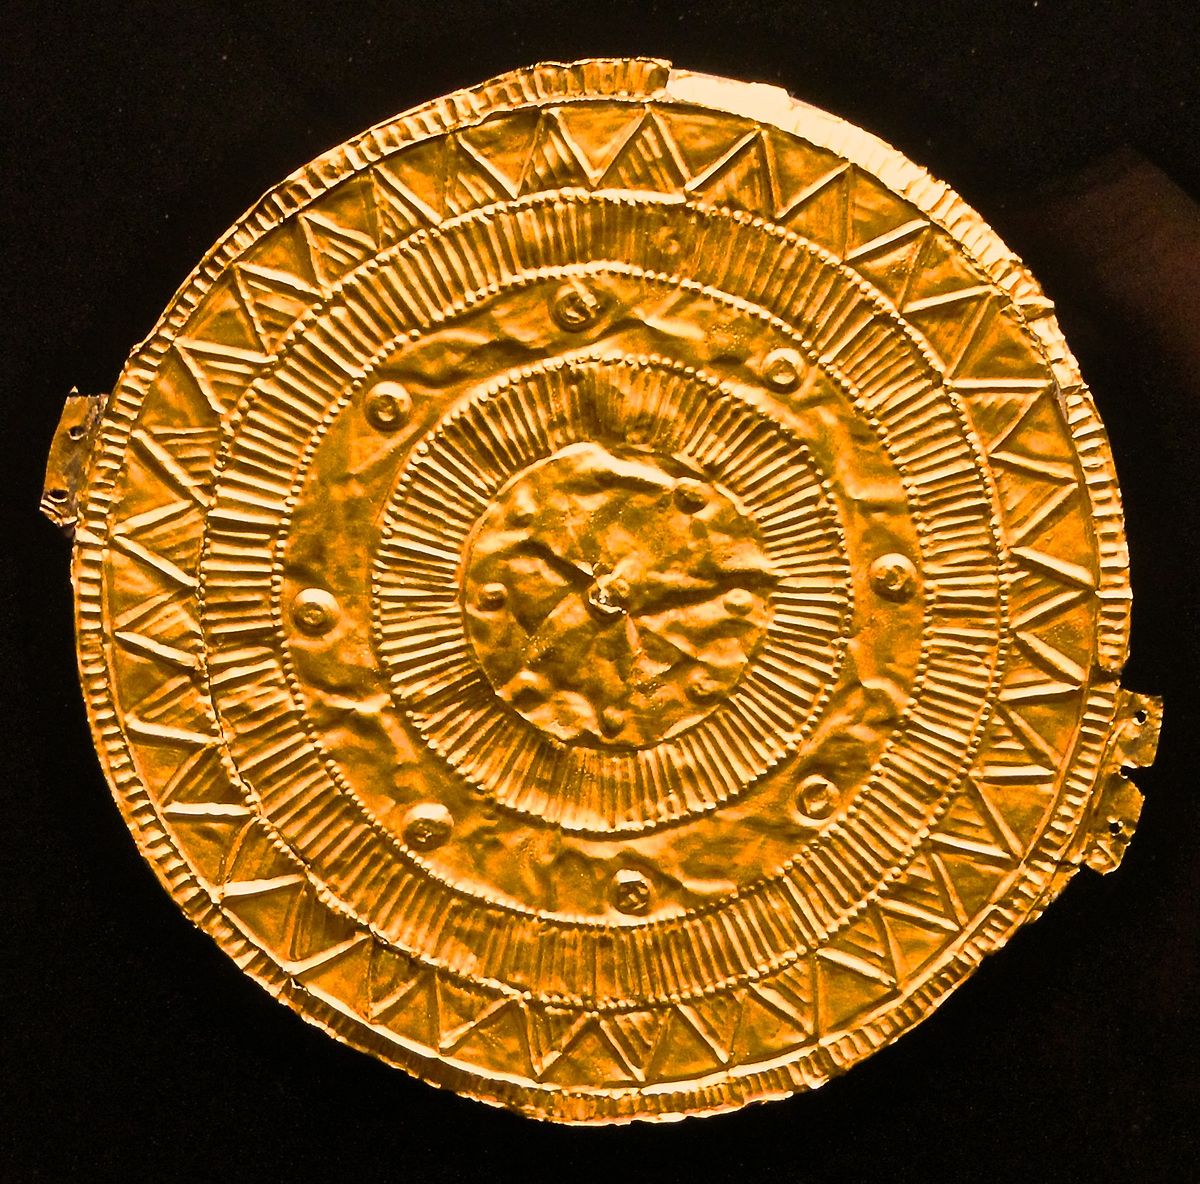 Όταν οι Έλληνες έφθασαν στην Υπερβόρεια (Σκανδιναβία): Απίστευτες γνώσεις αστρονομίας στον χρυσό δίσκο του Moordorf!